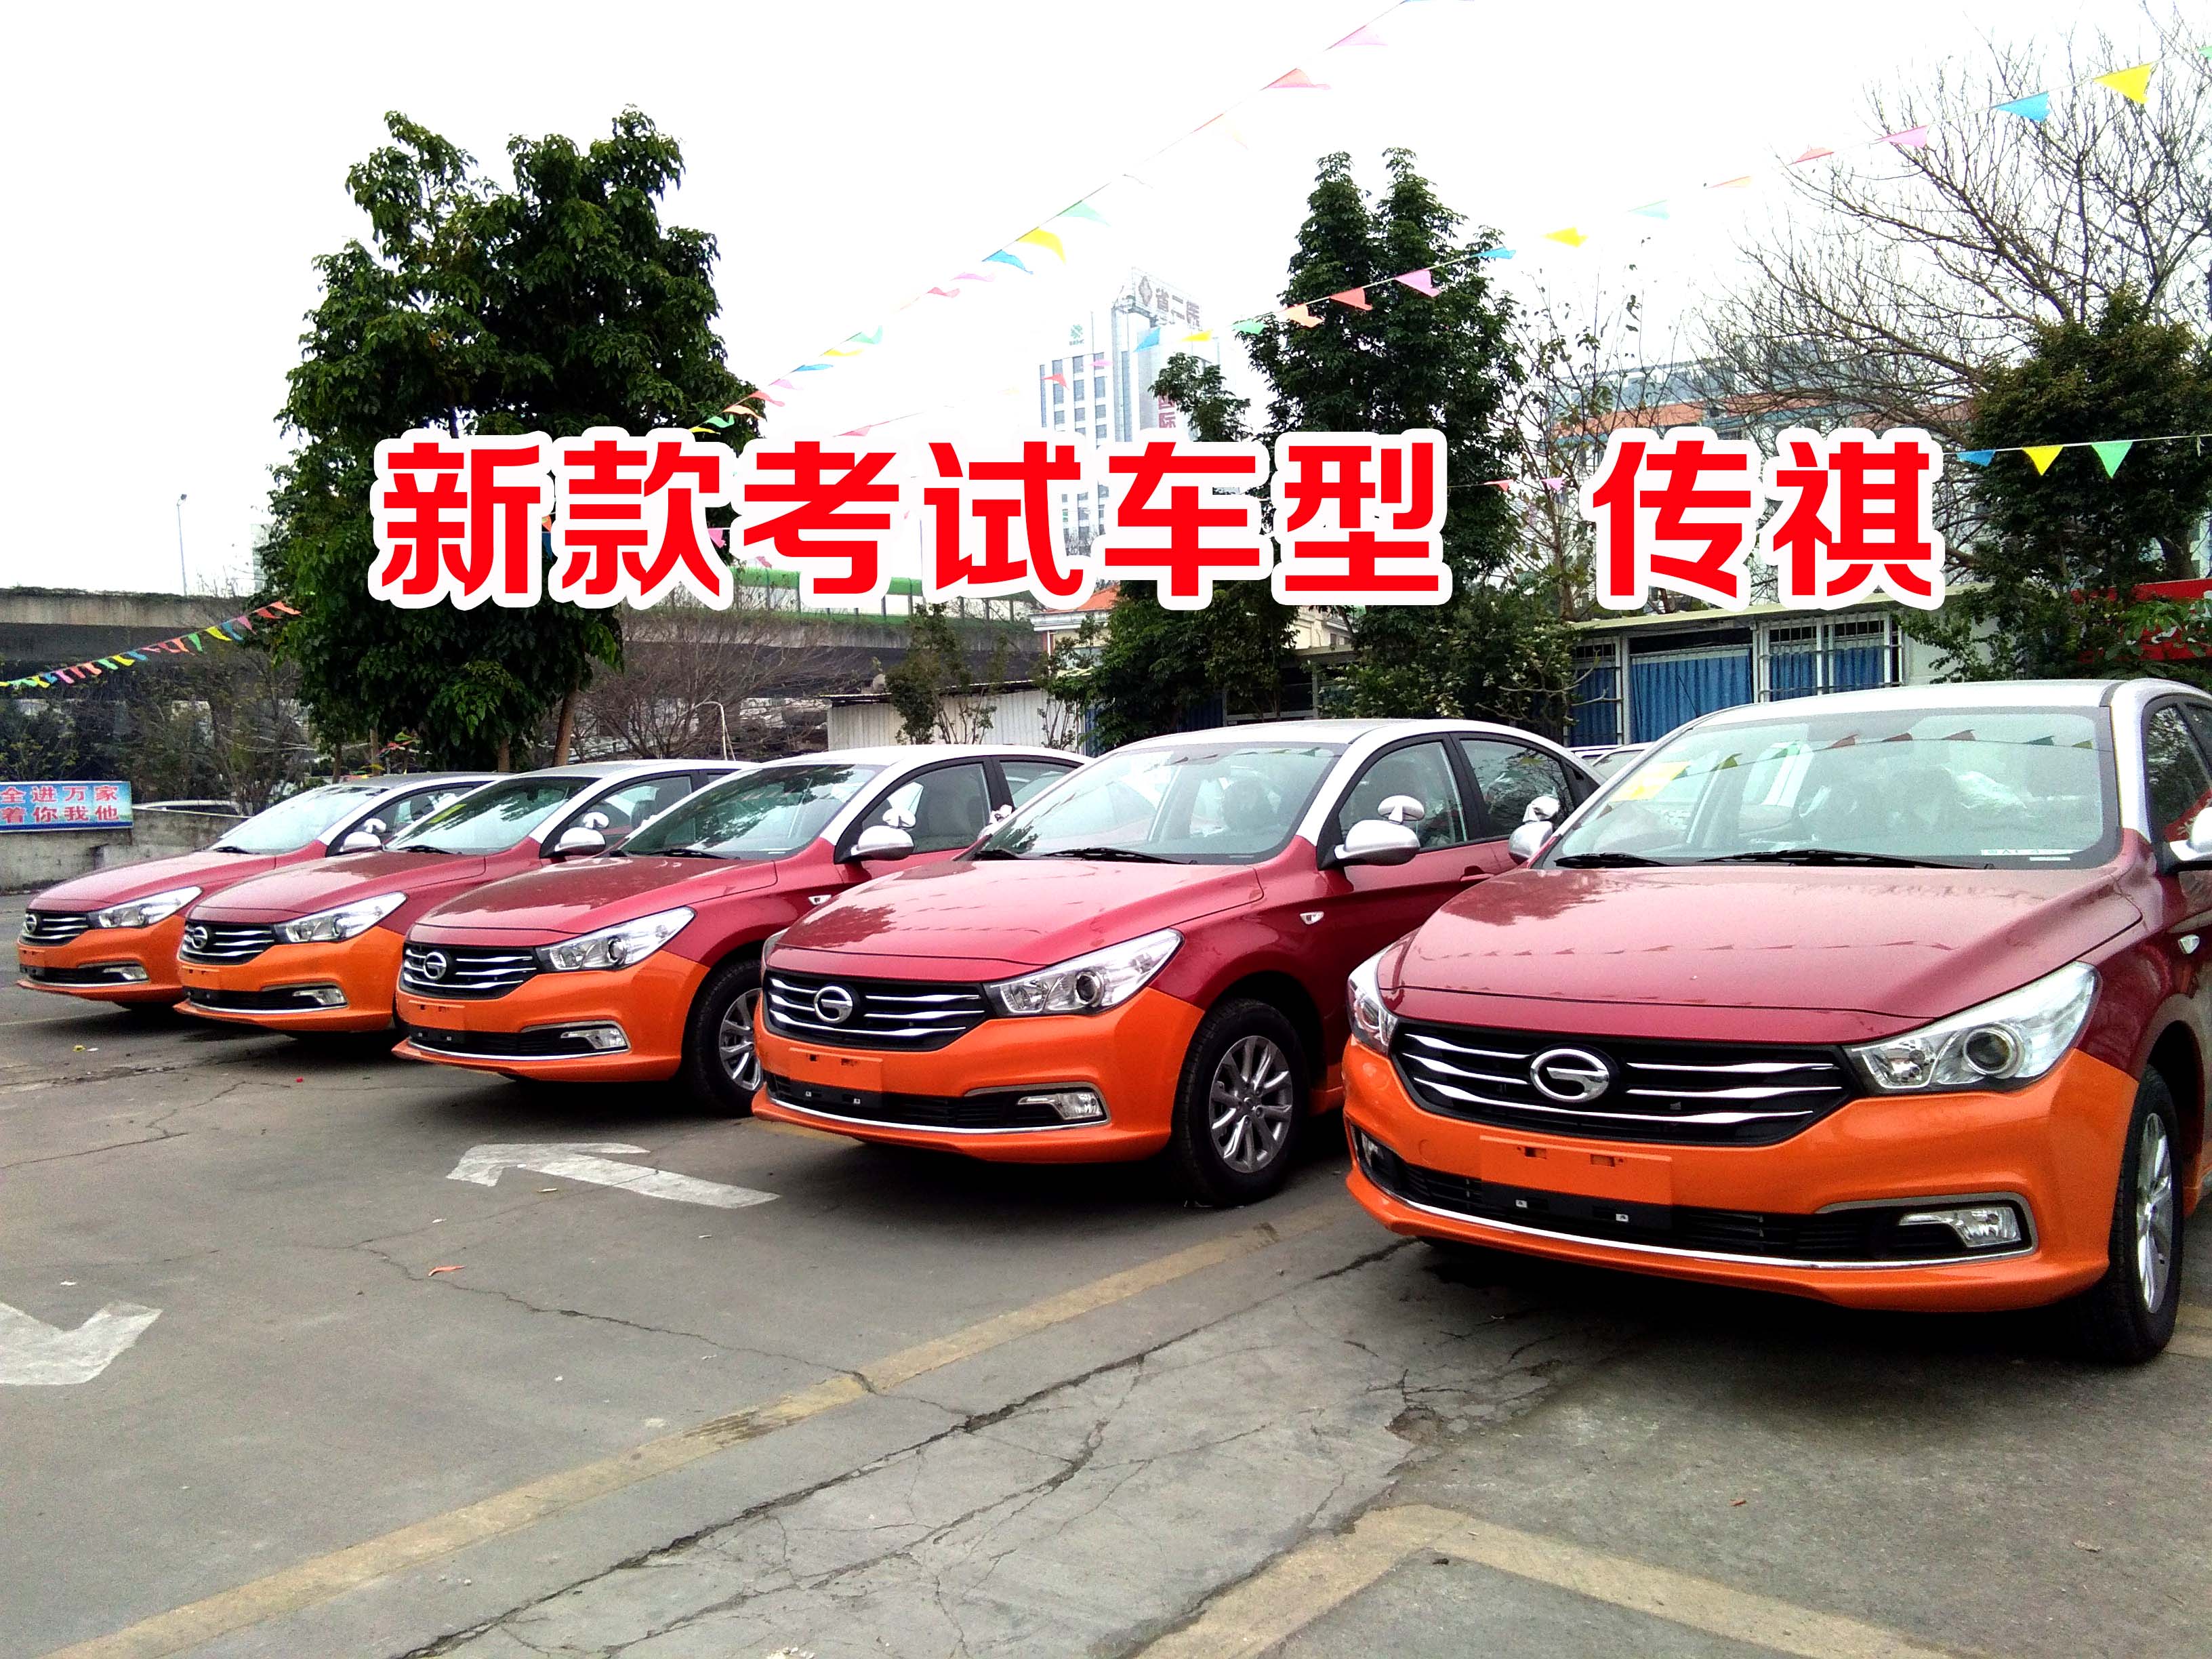 热烈庆祝广州正通驾校再次购进六台考试车型 传祺